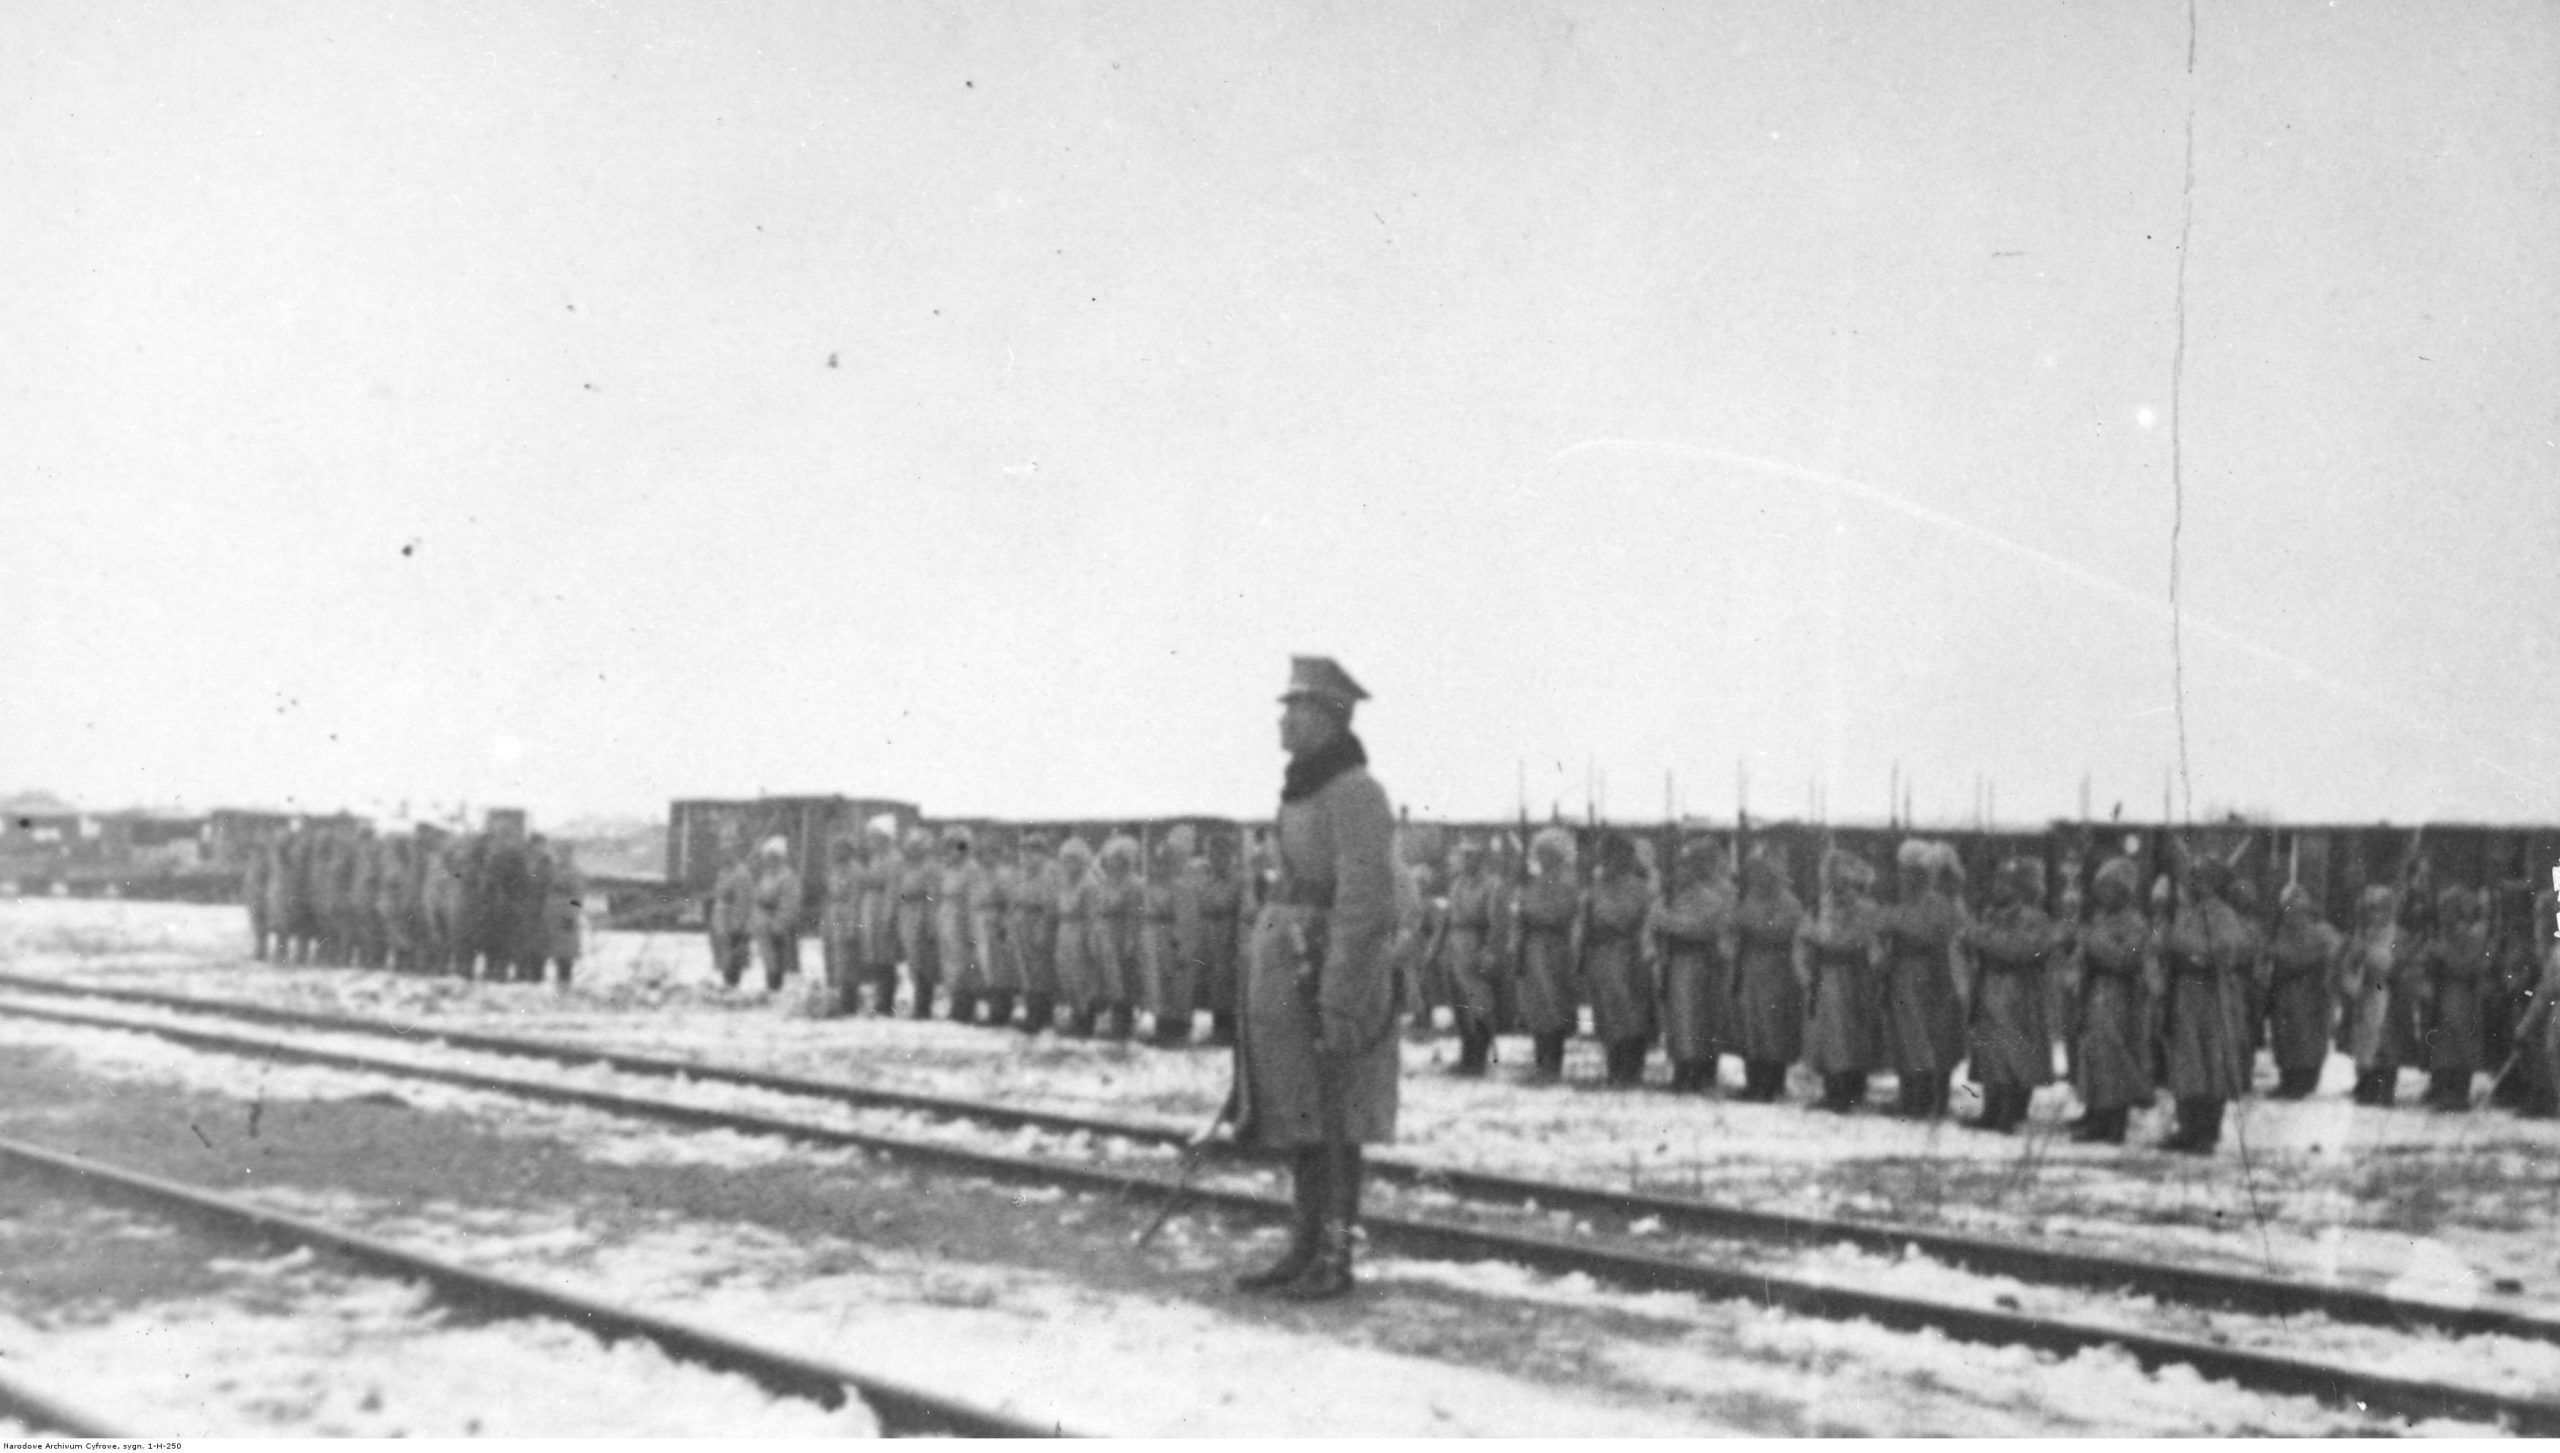 Czarno-biała fotografia przedstawiająca żołnierzy Dywizji Syberyjskiej ustawionej w szeregach, pośród torów kolejowych. Wszyscy w długich, zimowych płaszczach i futrzanych czapach.  W centrum kadru znajduje się żołnierz w zimowym, płaszczu wojskowym. Stoi lewym bokiem do obiektywu, w postawie zasadniczej z szablą opuszczoną swobodnie w prawej ręce. Spogląda w swoją prawą stronę. 